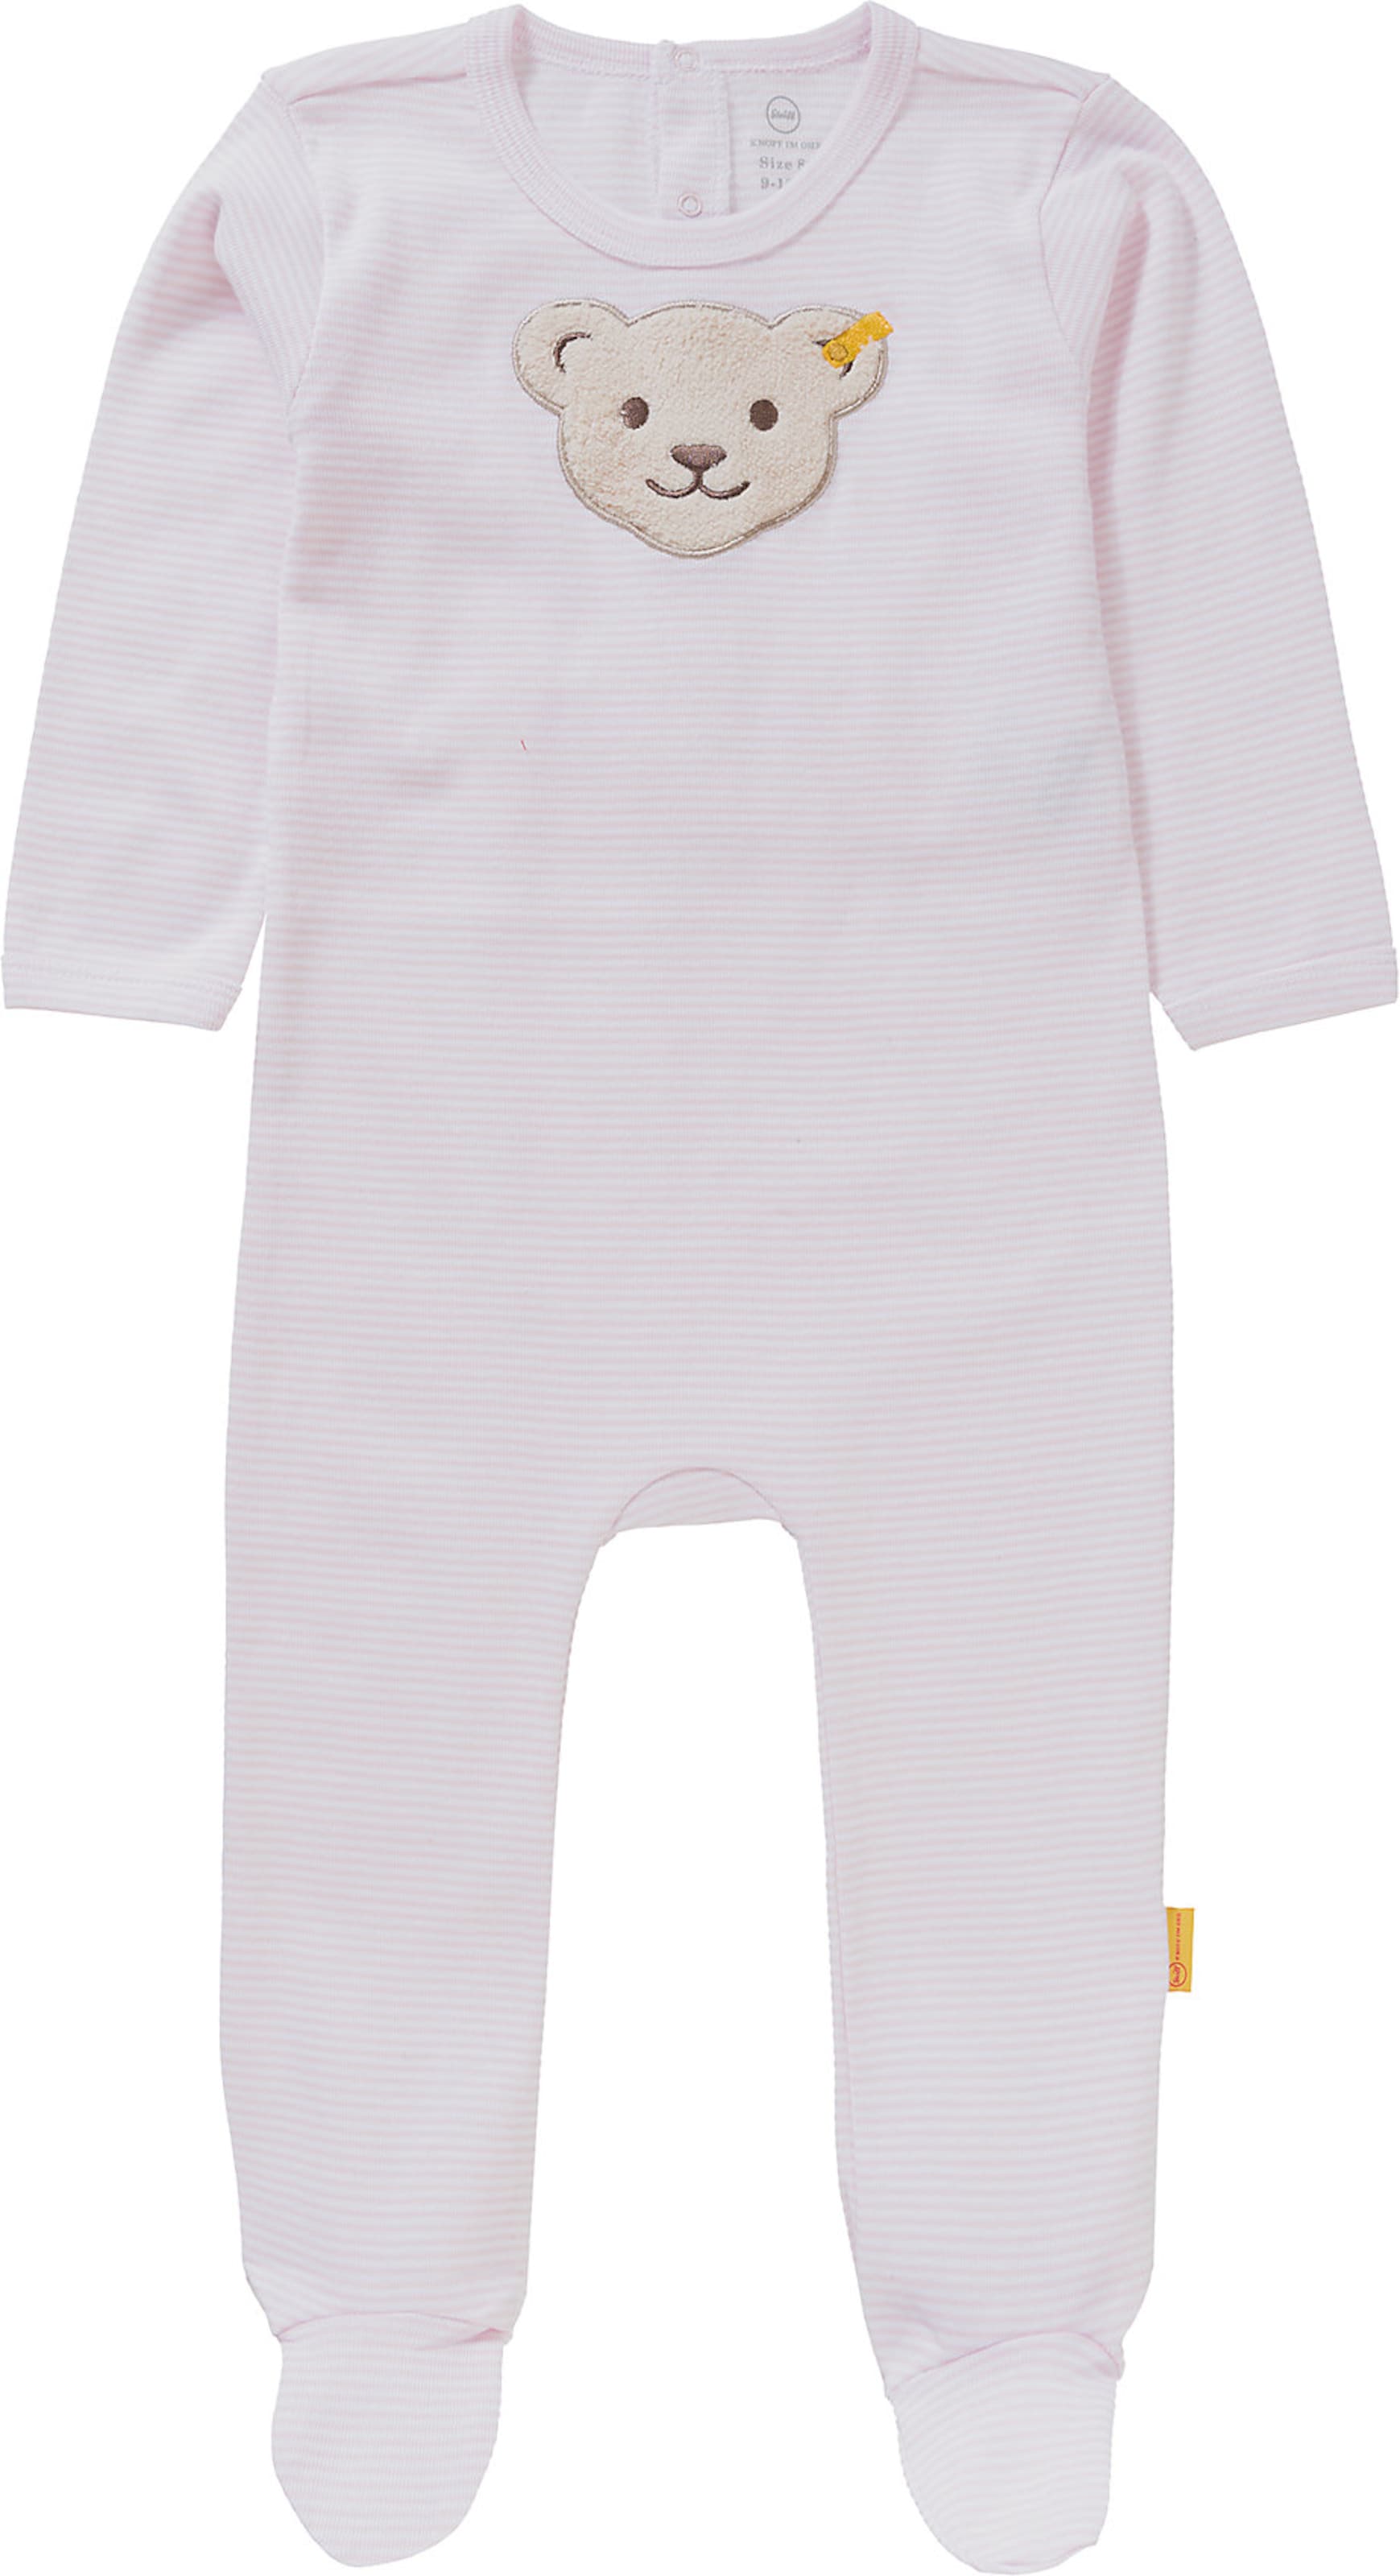 Kinder Bekleidung STEIFF Schlafanzug in Altrosa - TM09558